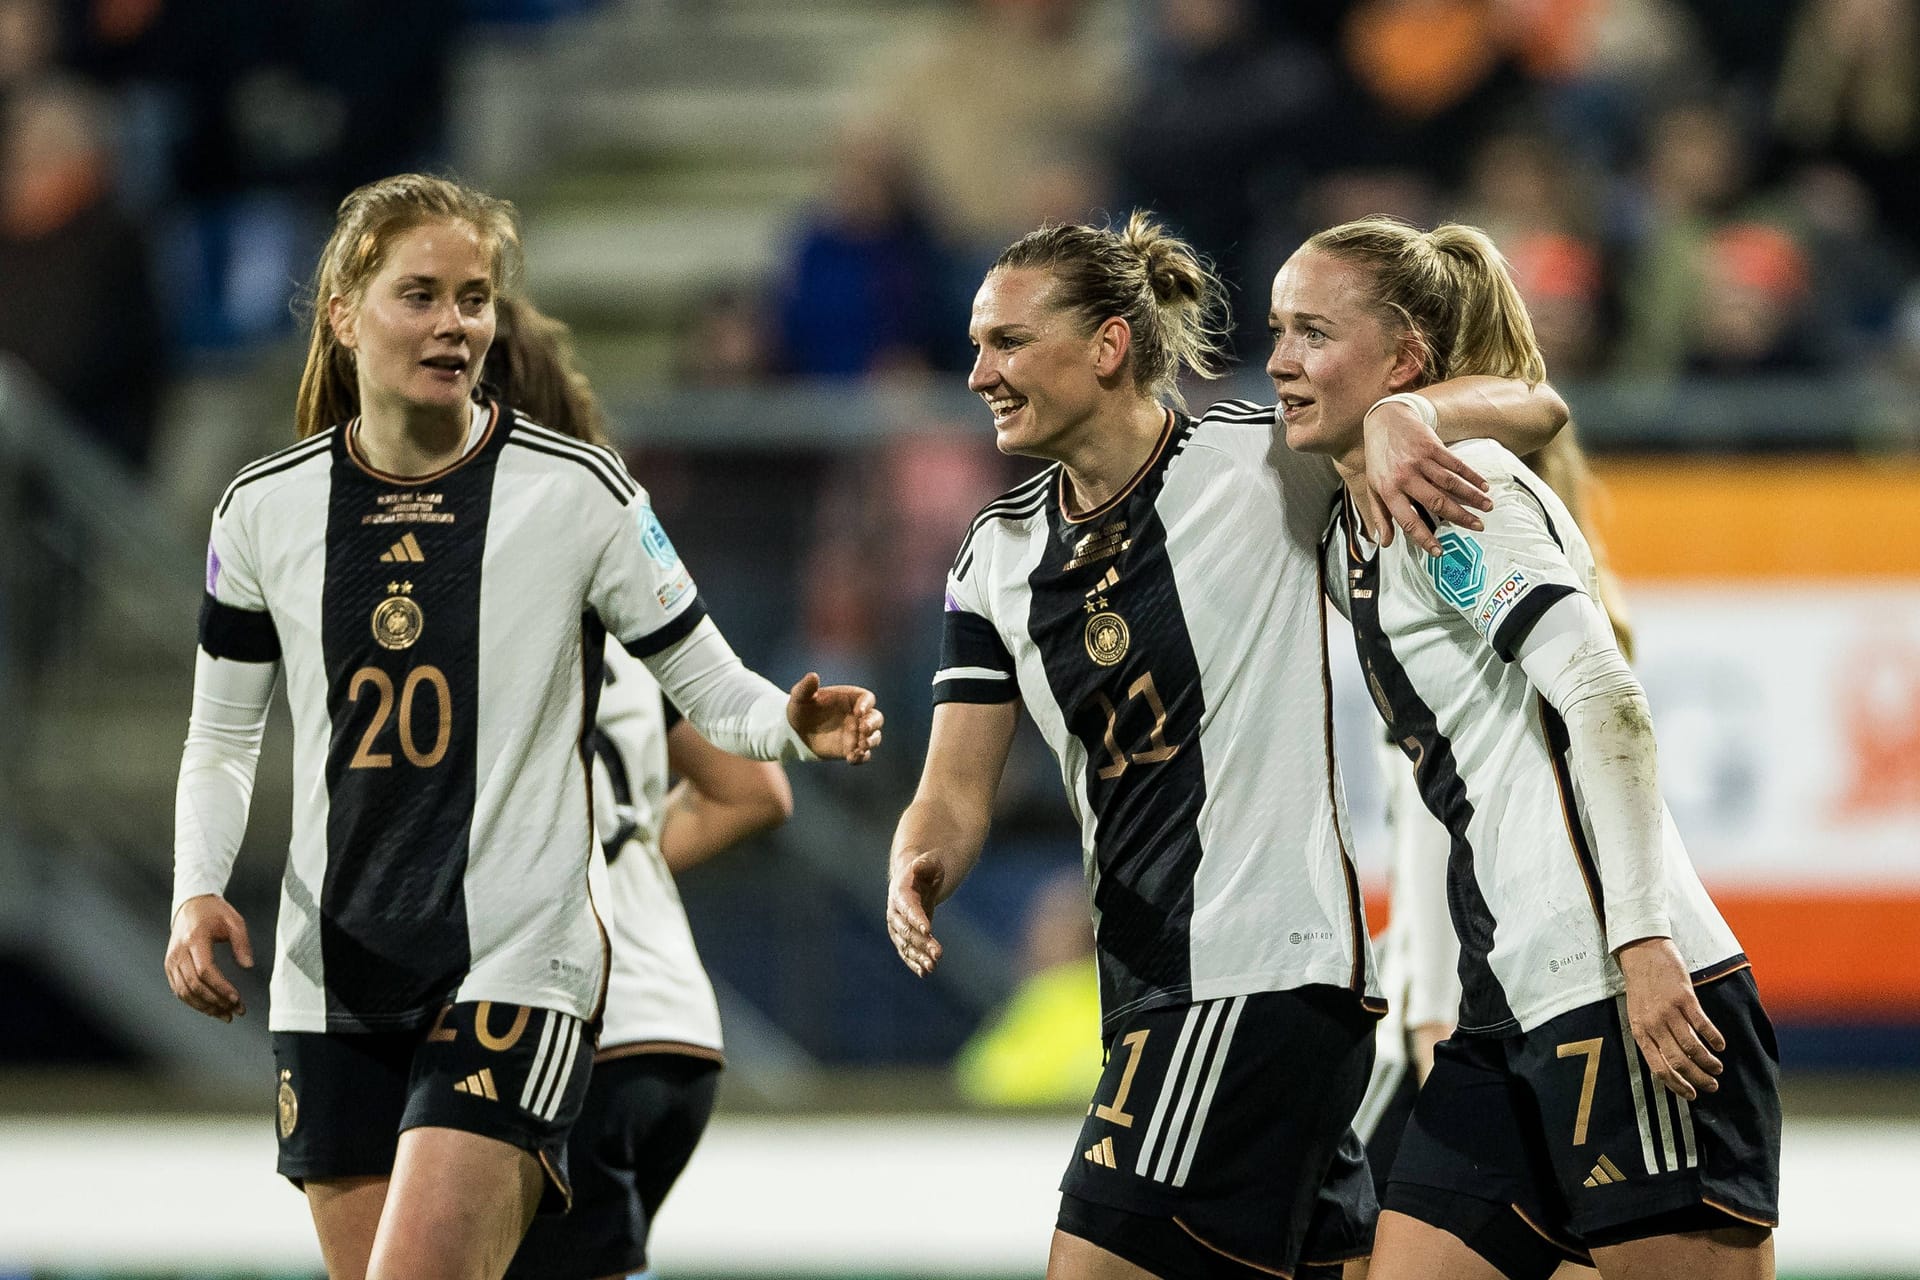 Die deutsche Frauennationalmannschaft startet gut ins Spiel um Platz drei der Nations League. Gegen die Niederlande presst das Team hoch, sucht erste Abschlüsse. In der zweiten Hälfte belohnt sie sich dann. Die Einzelkritik.